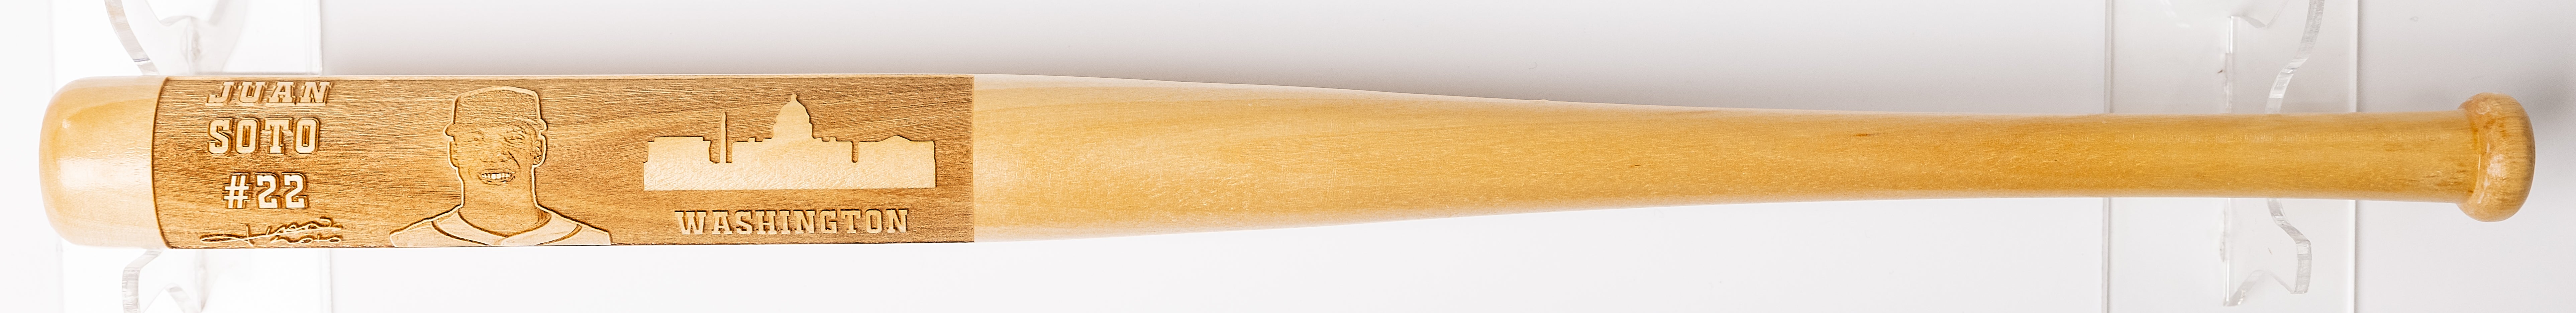 Juan Soto Laser-Engraved Wood Baseball Bat